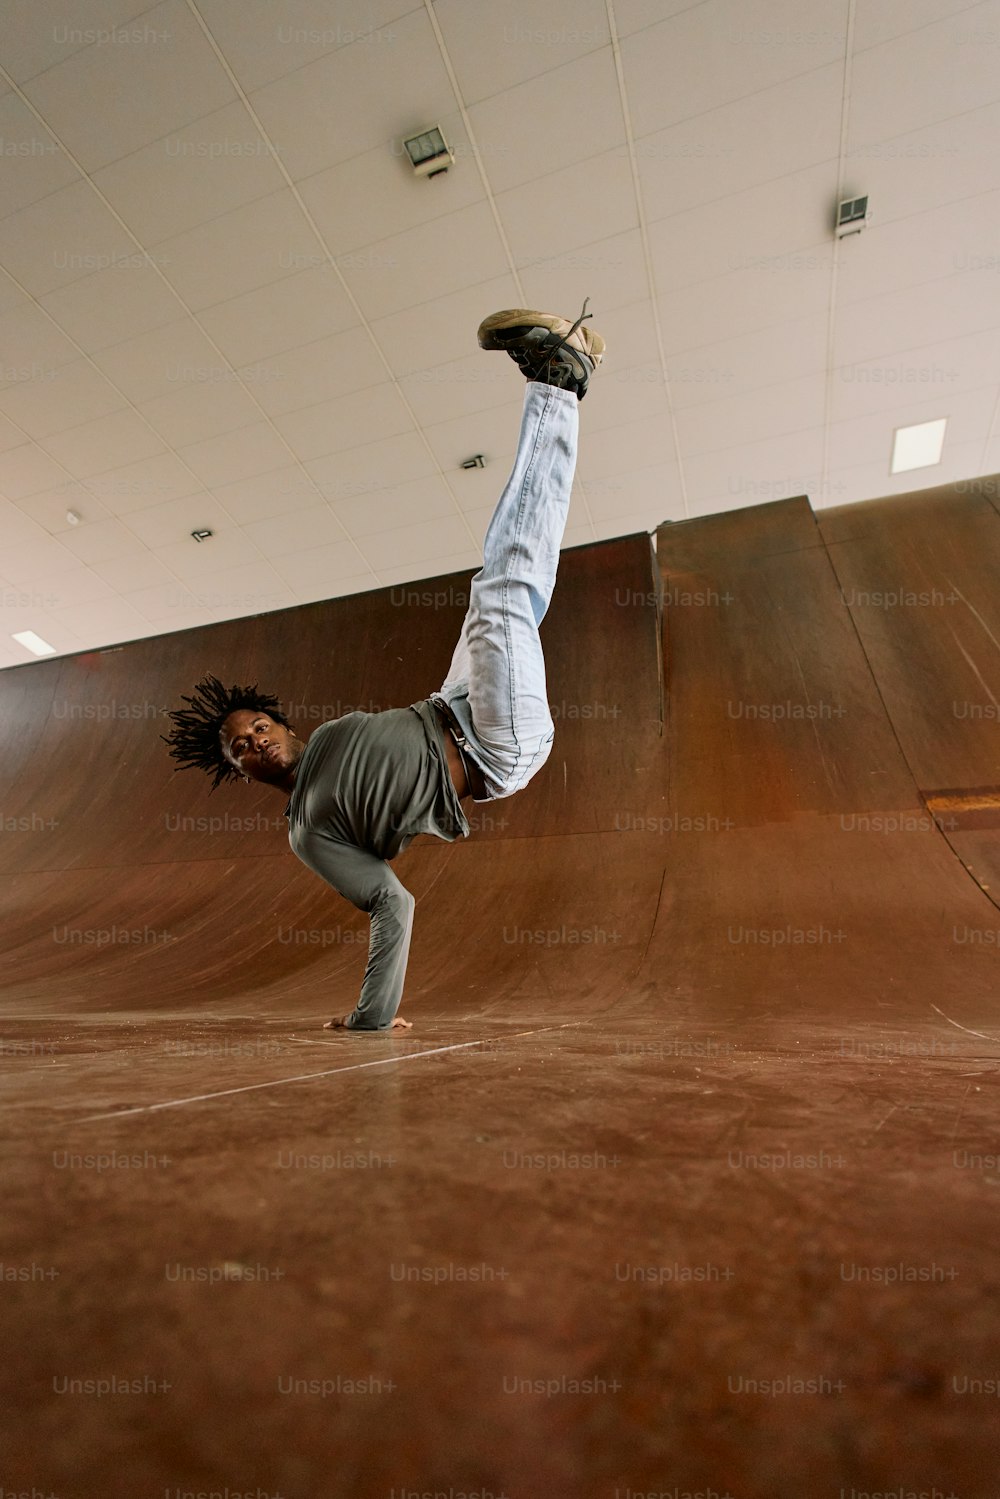 Un uomo che fa un trick su uno skateboard in uno skate park